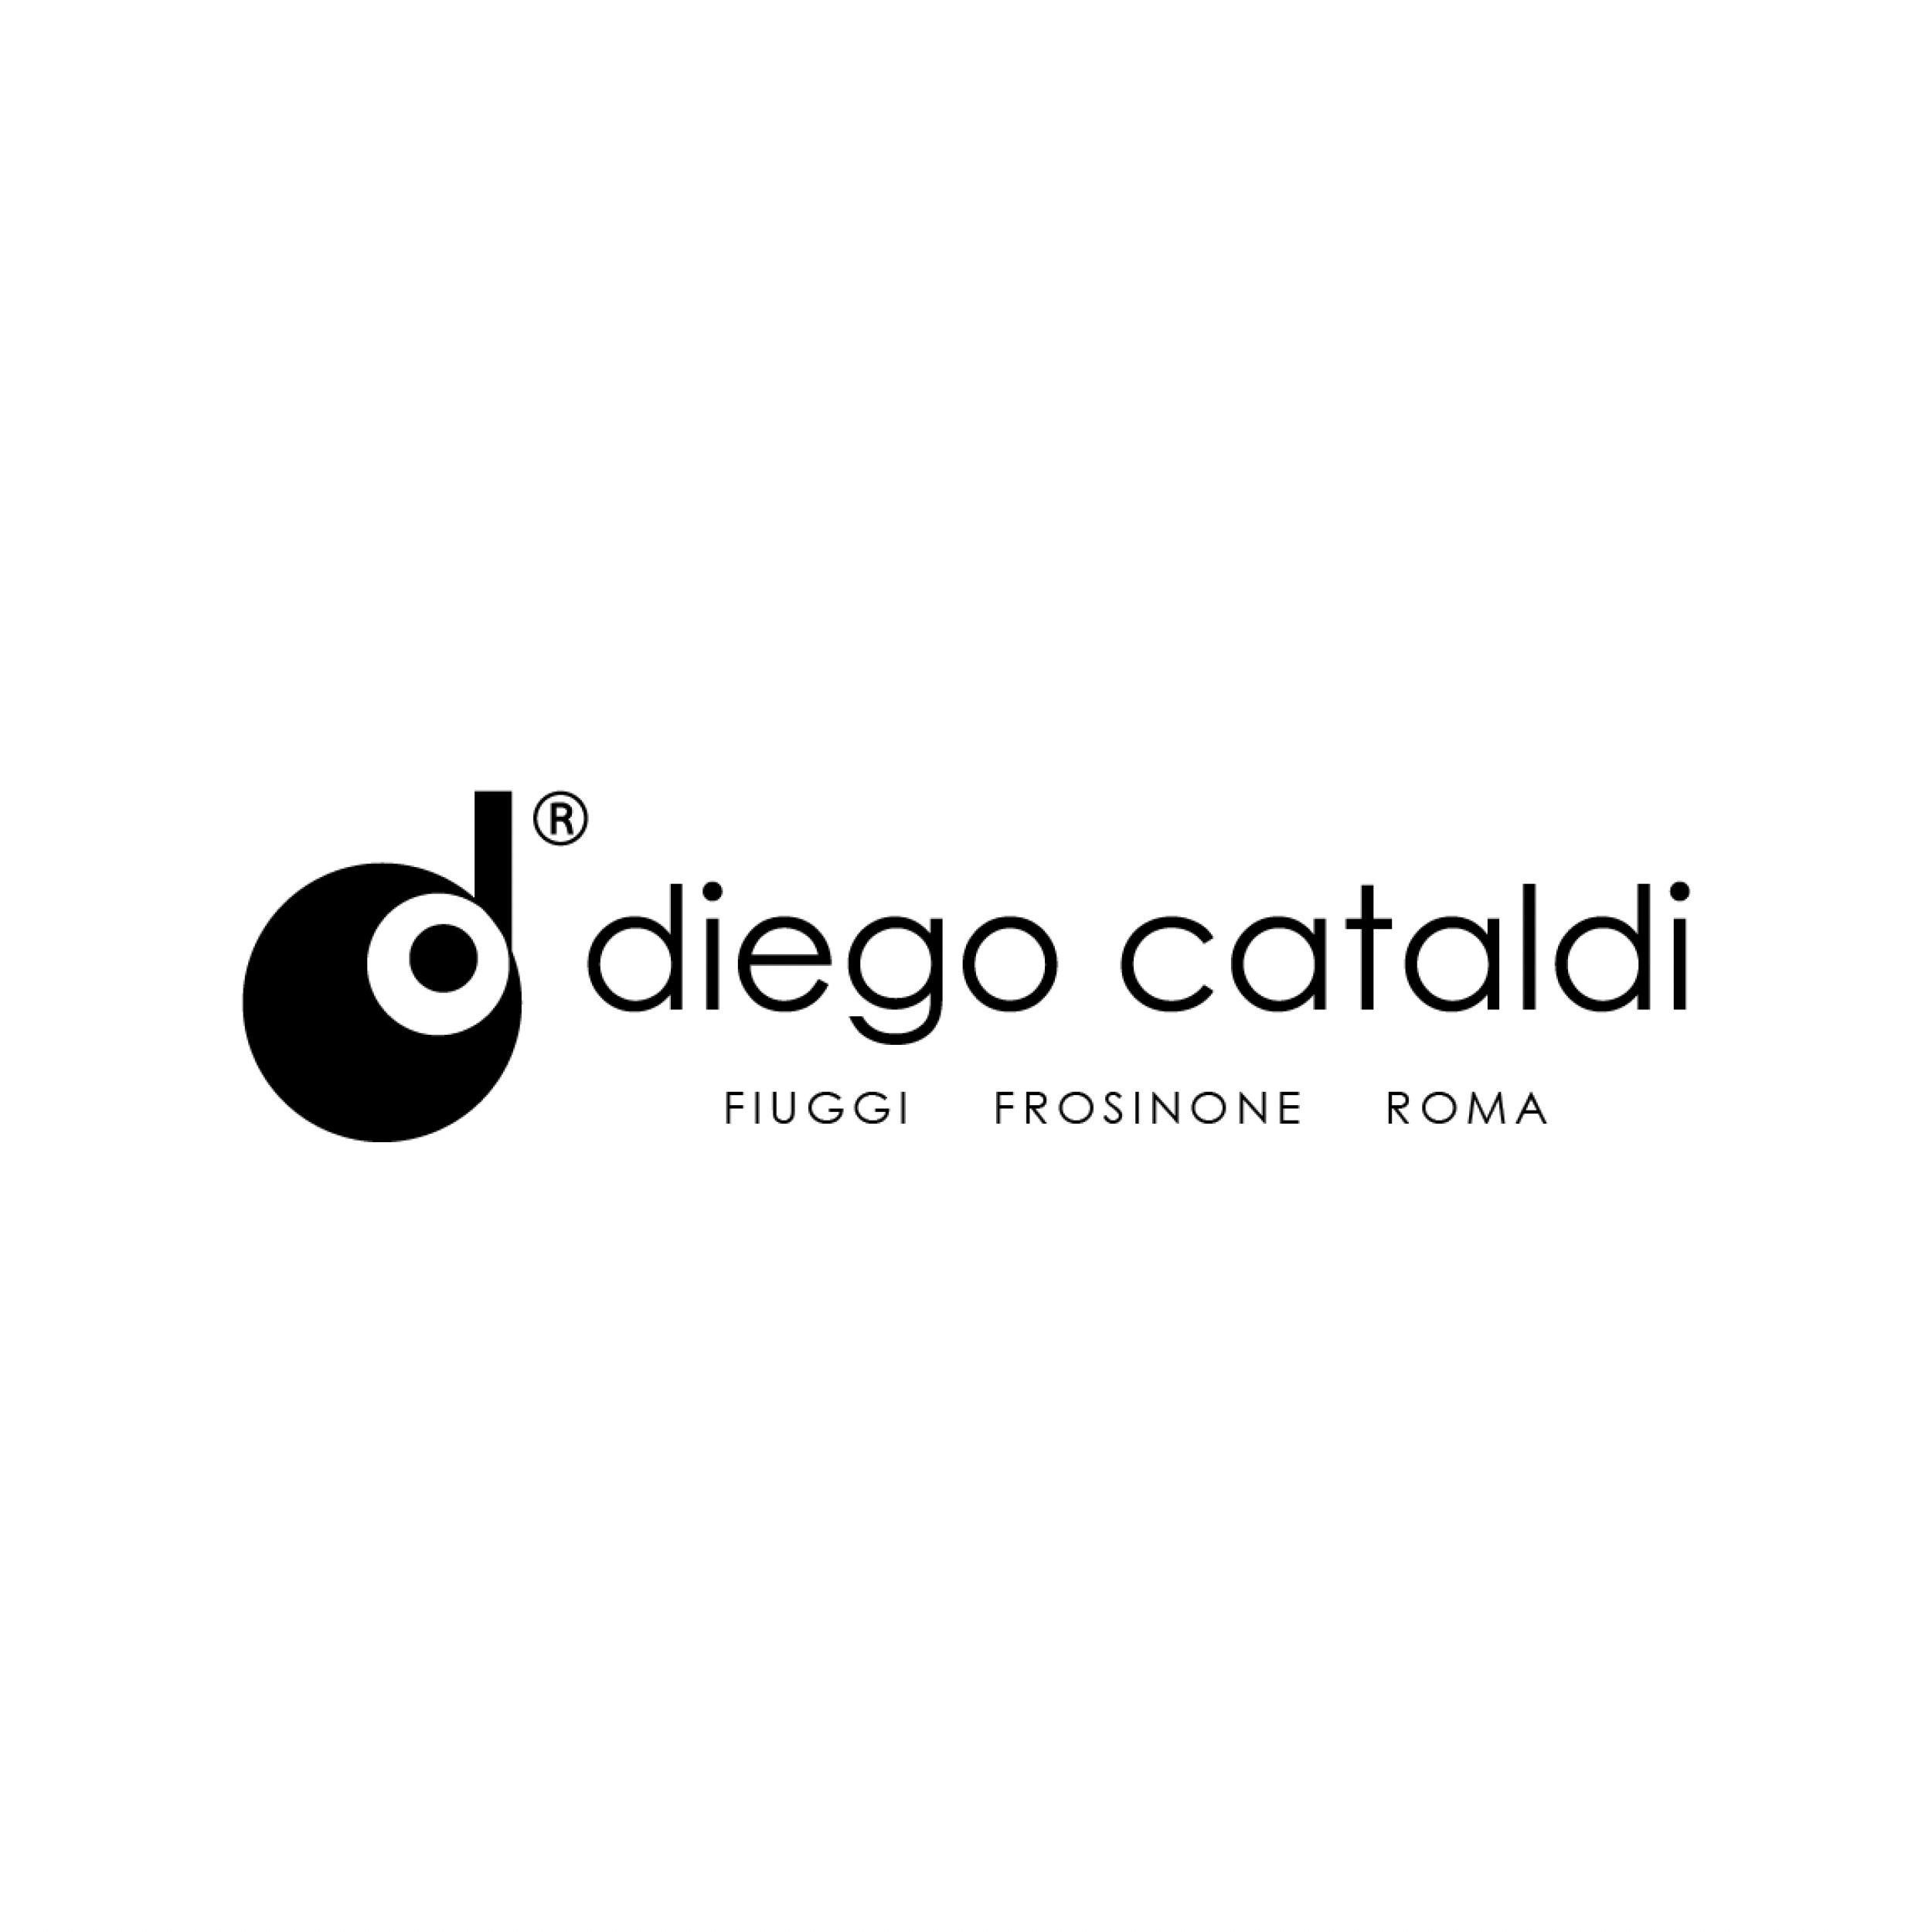 Diego Cataldi - Rivenditore Autorizzato Rolex & Cartier - Orologerie Roma